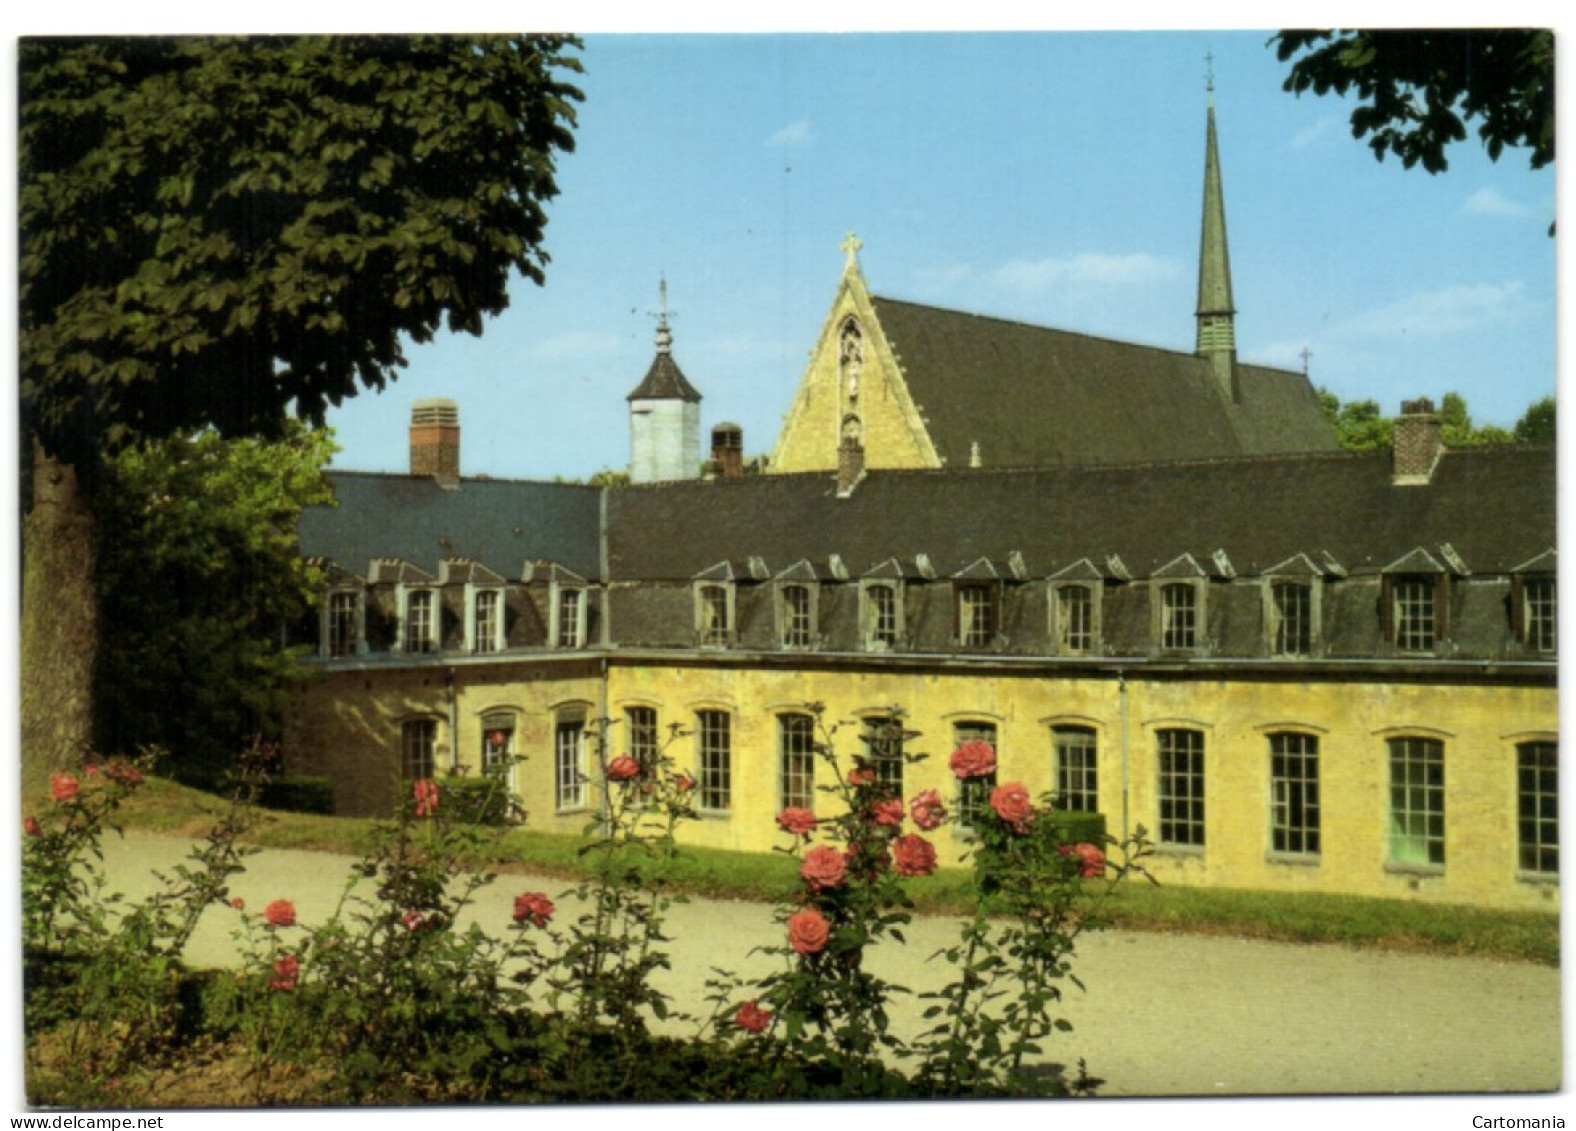 Ixelles - Abbaye De La Cambre - Elsene - Ixelles